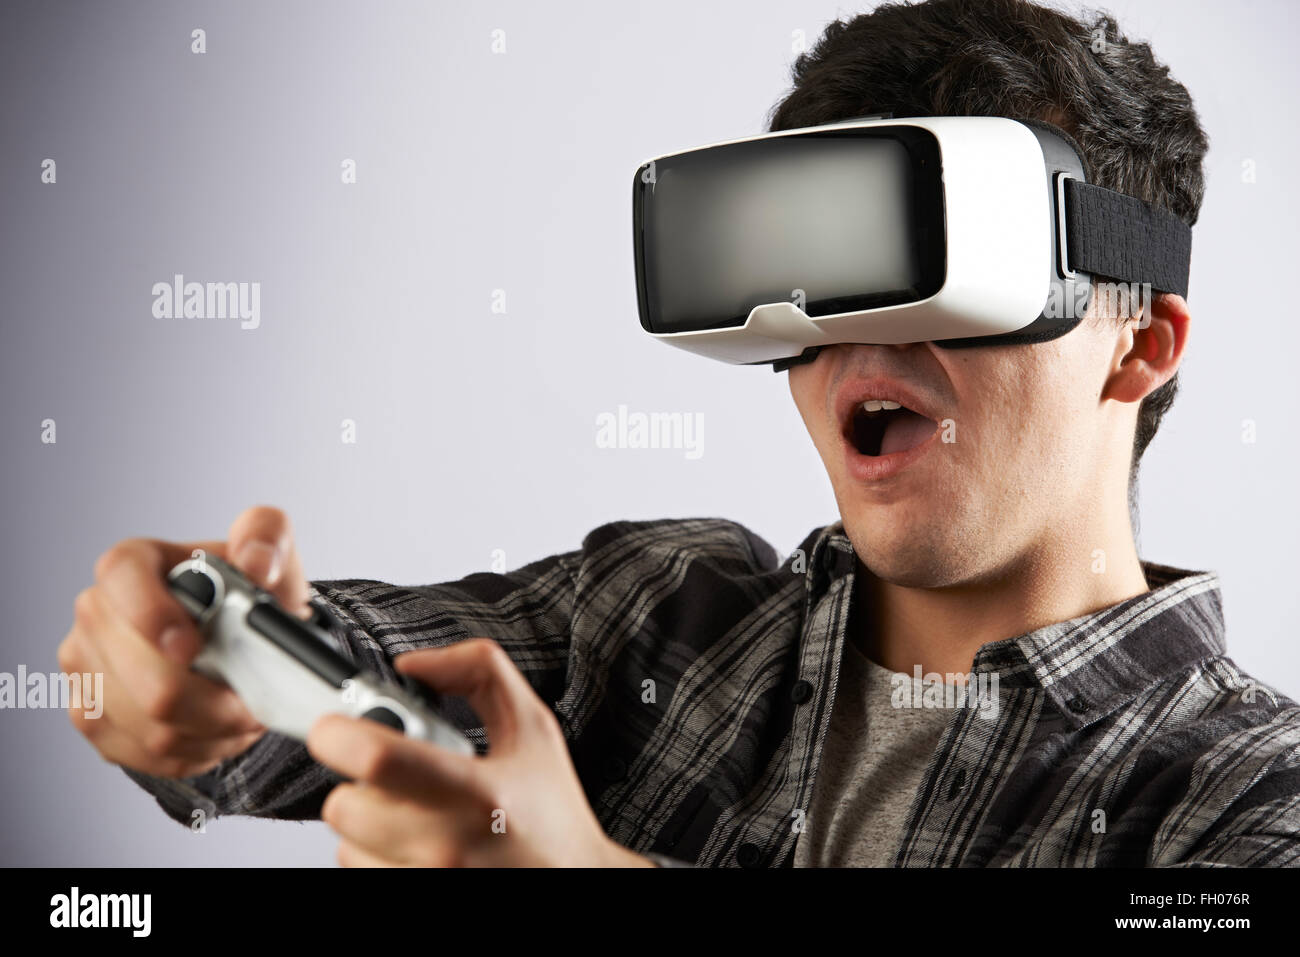 Man Playing Video Game Port casque de réalité virtuelle Banque D'Images